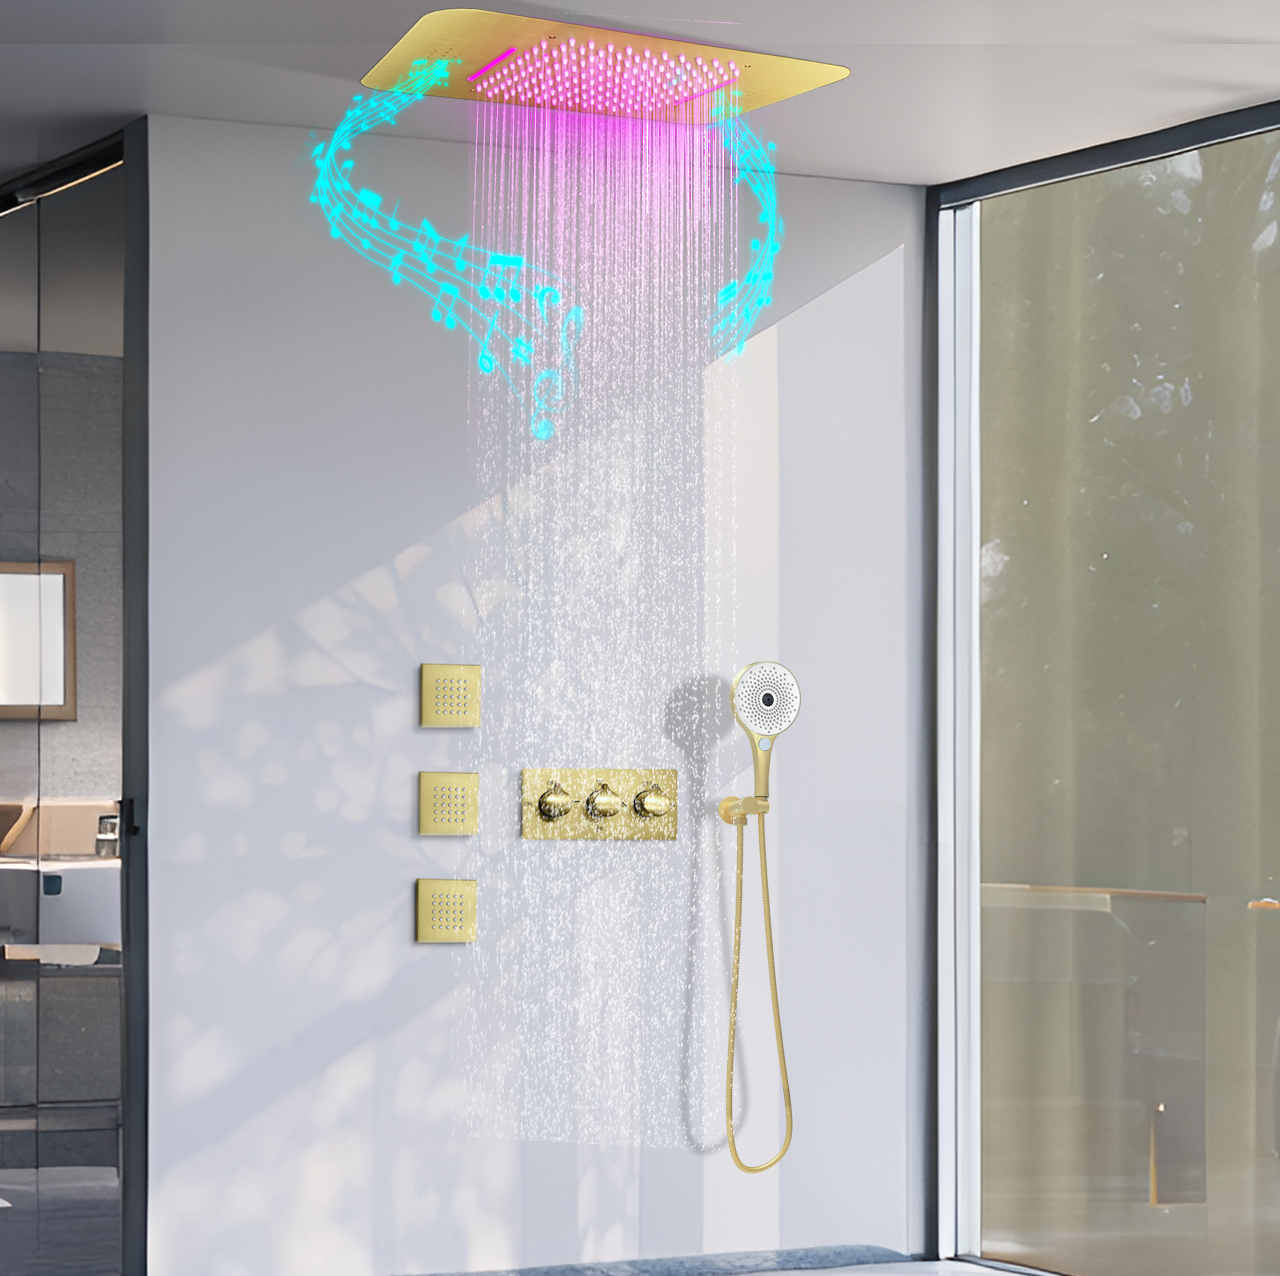 سقف الحمام الحديث LED الموسيقى المطر النفاثة عدة نظام مخفي درجة حرارة ثابتة دش صنبور الماء نظام عدة النفاثة